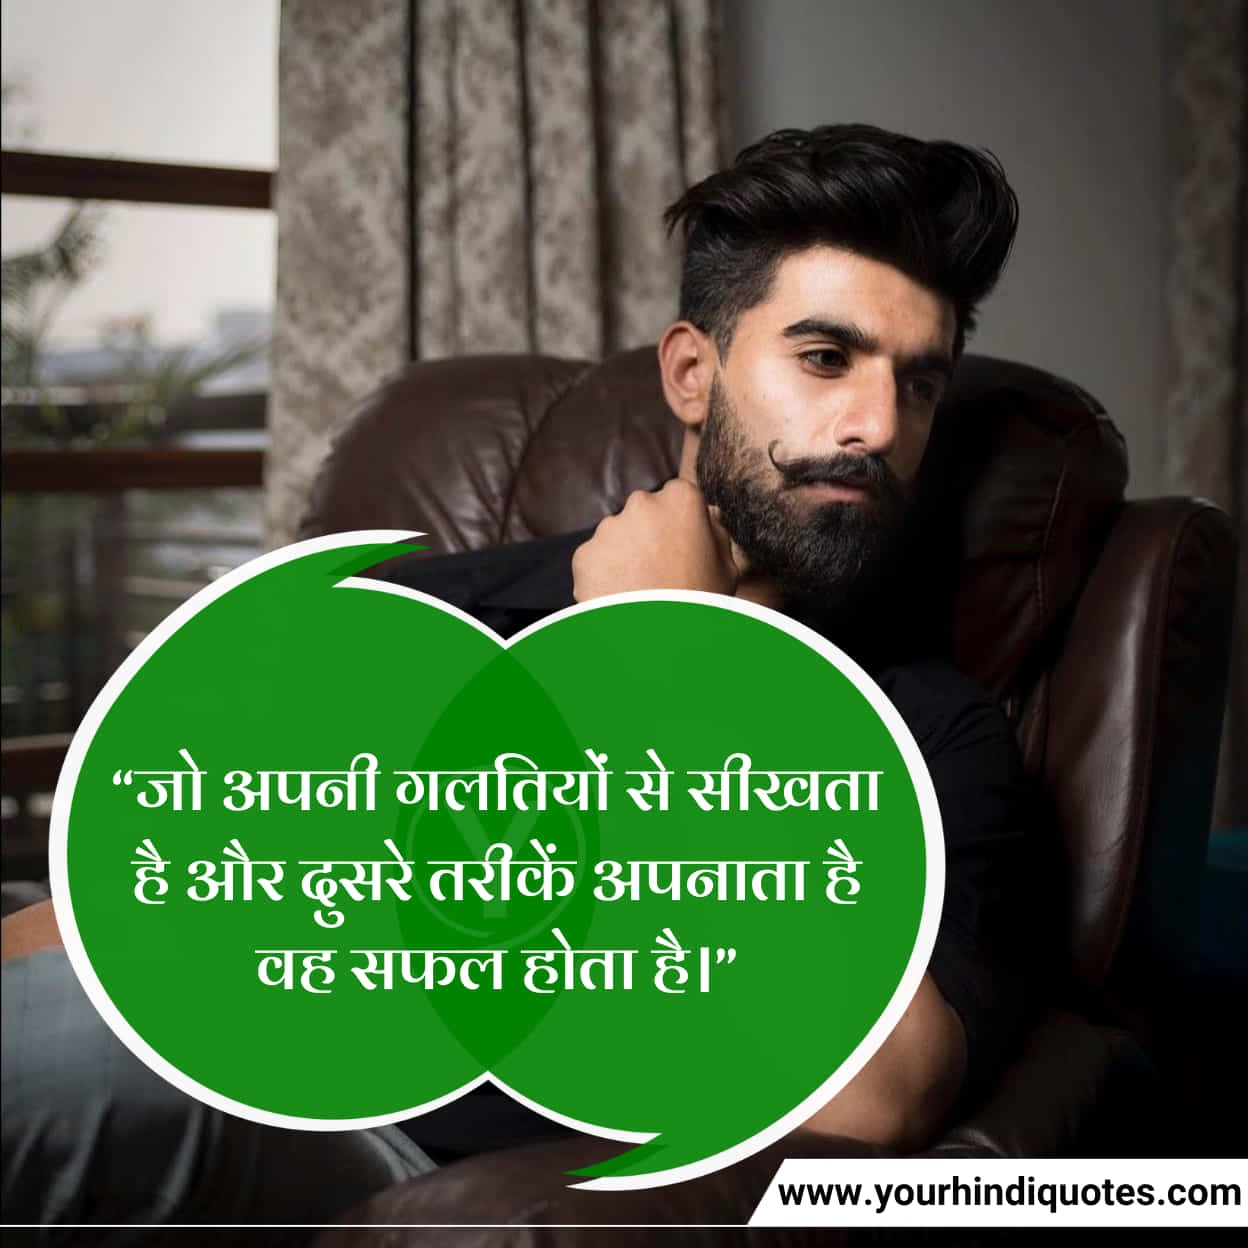 Inspiring Hindi Quotes